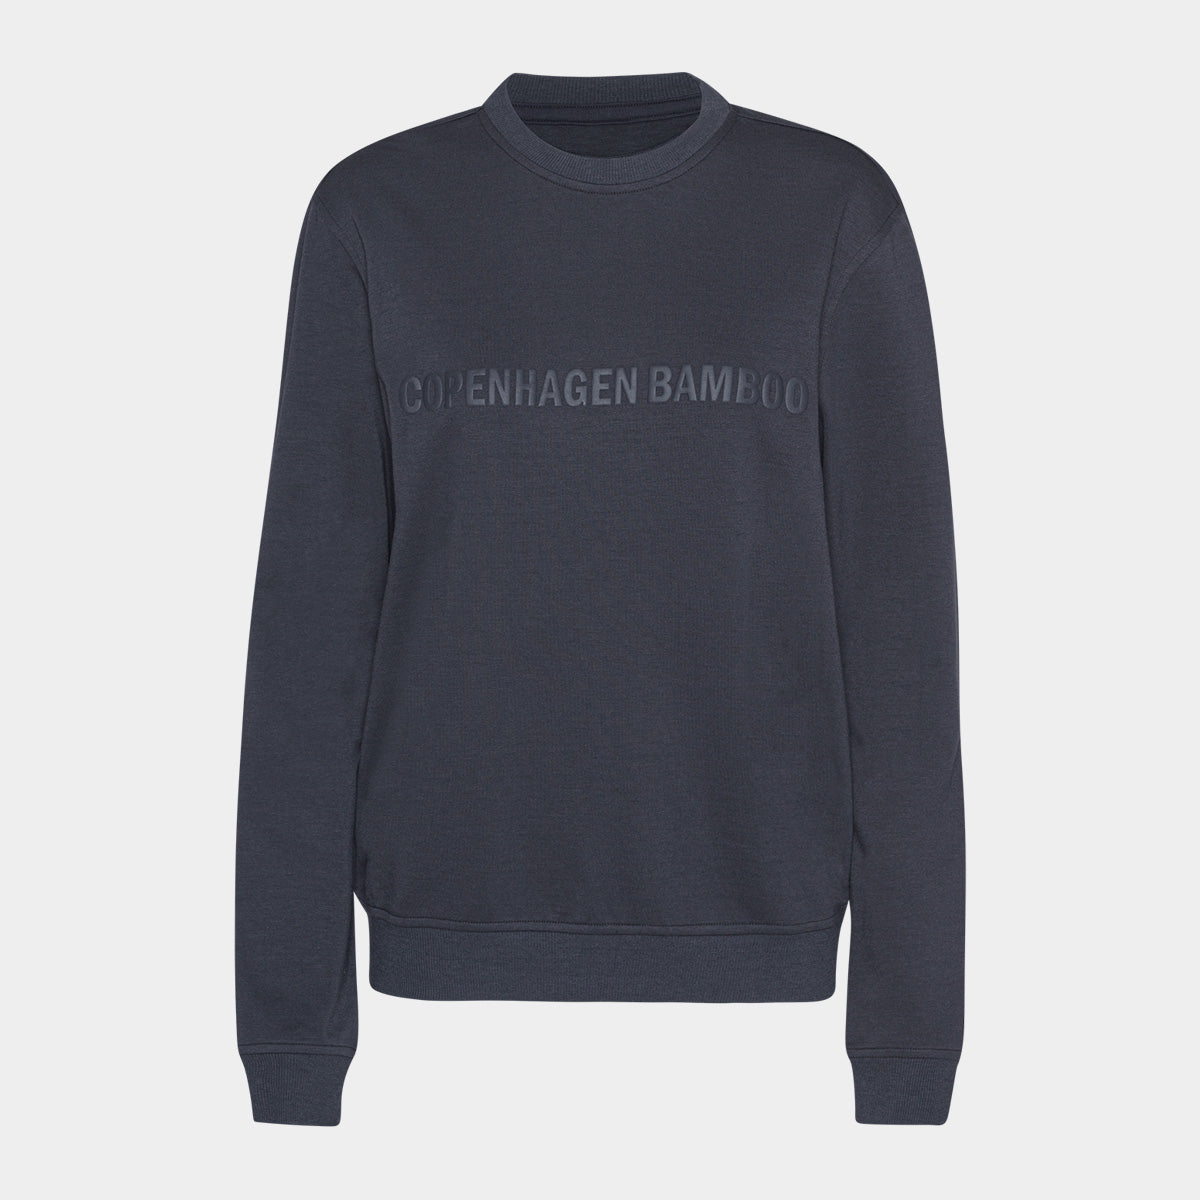 Se Mørkegrå bambus sweatshirt til dame med logo fra Copenhagen Bamboo, S hos Bambustøj.dk